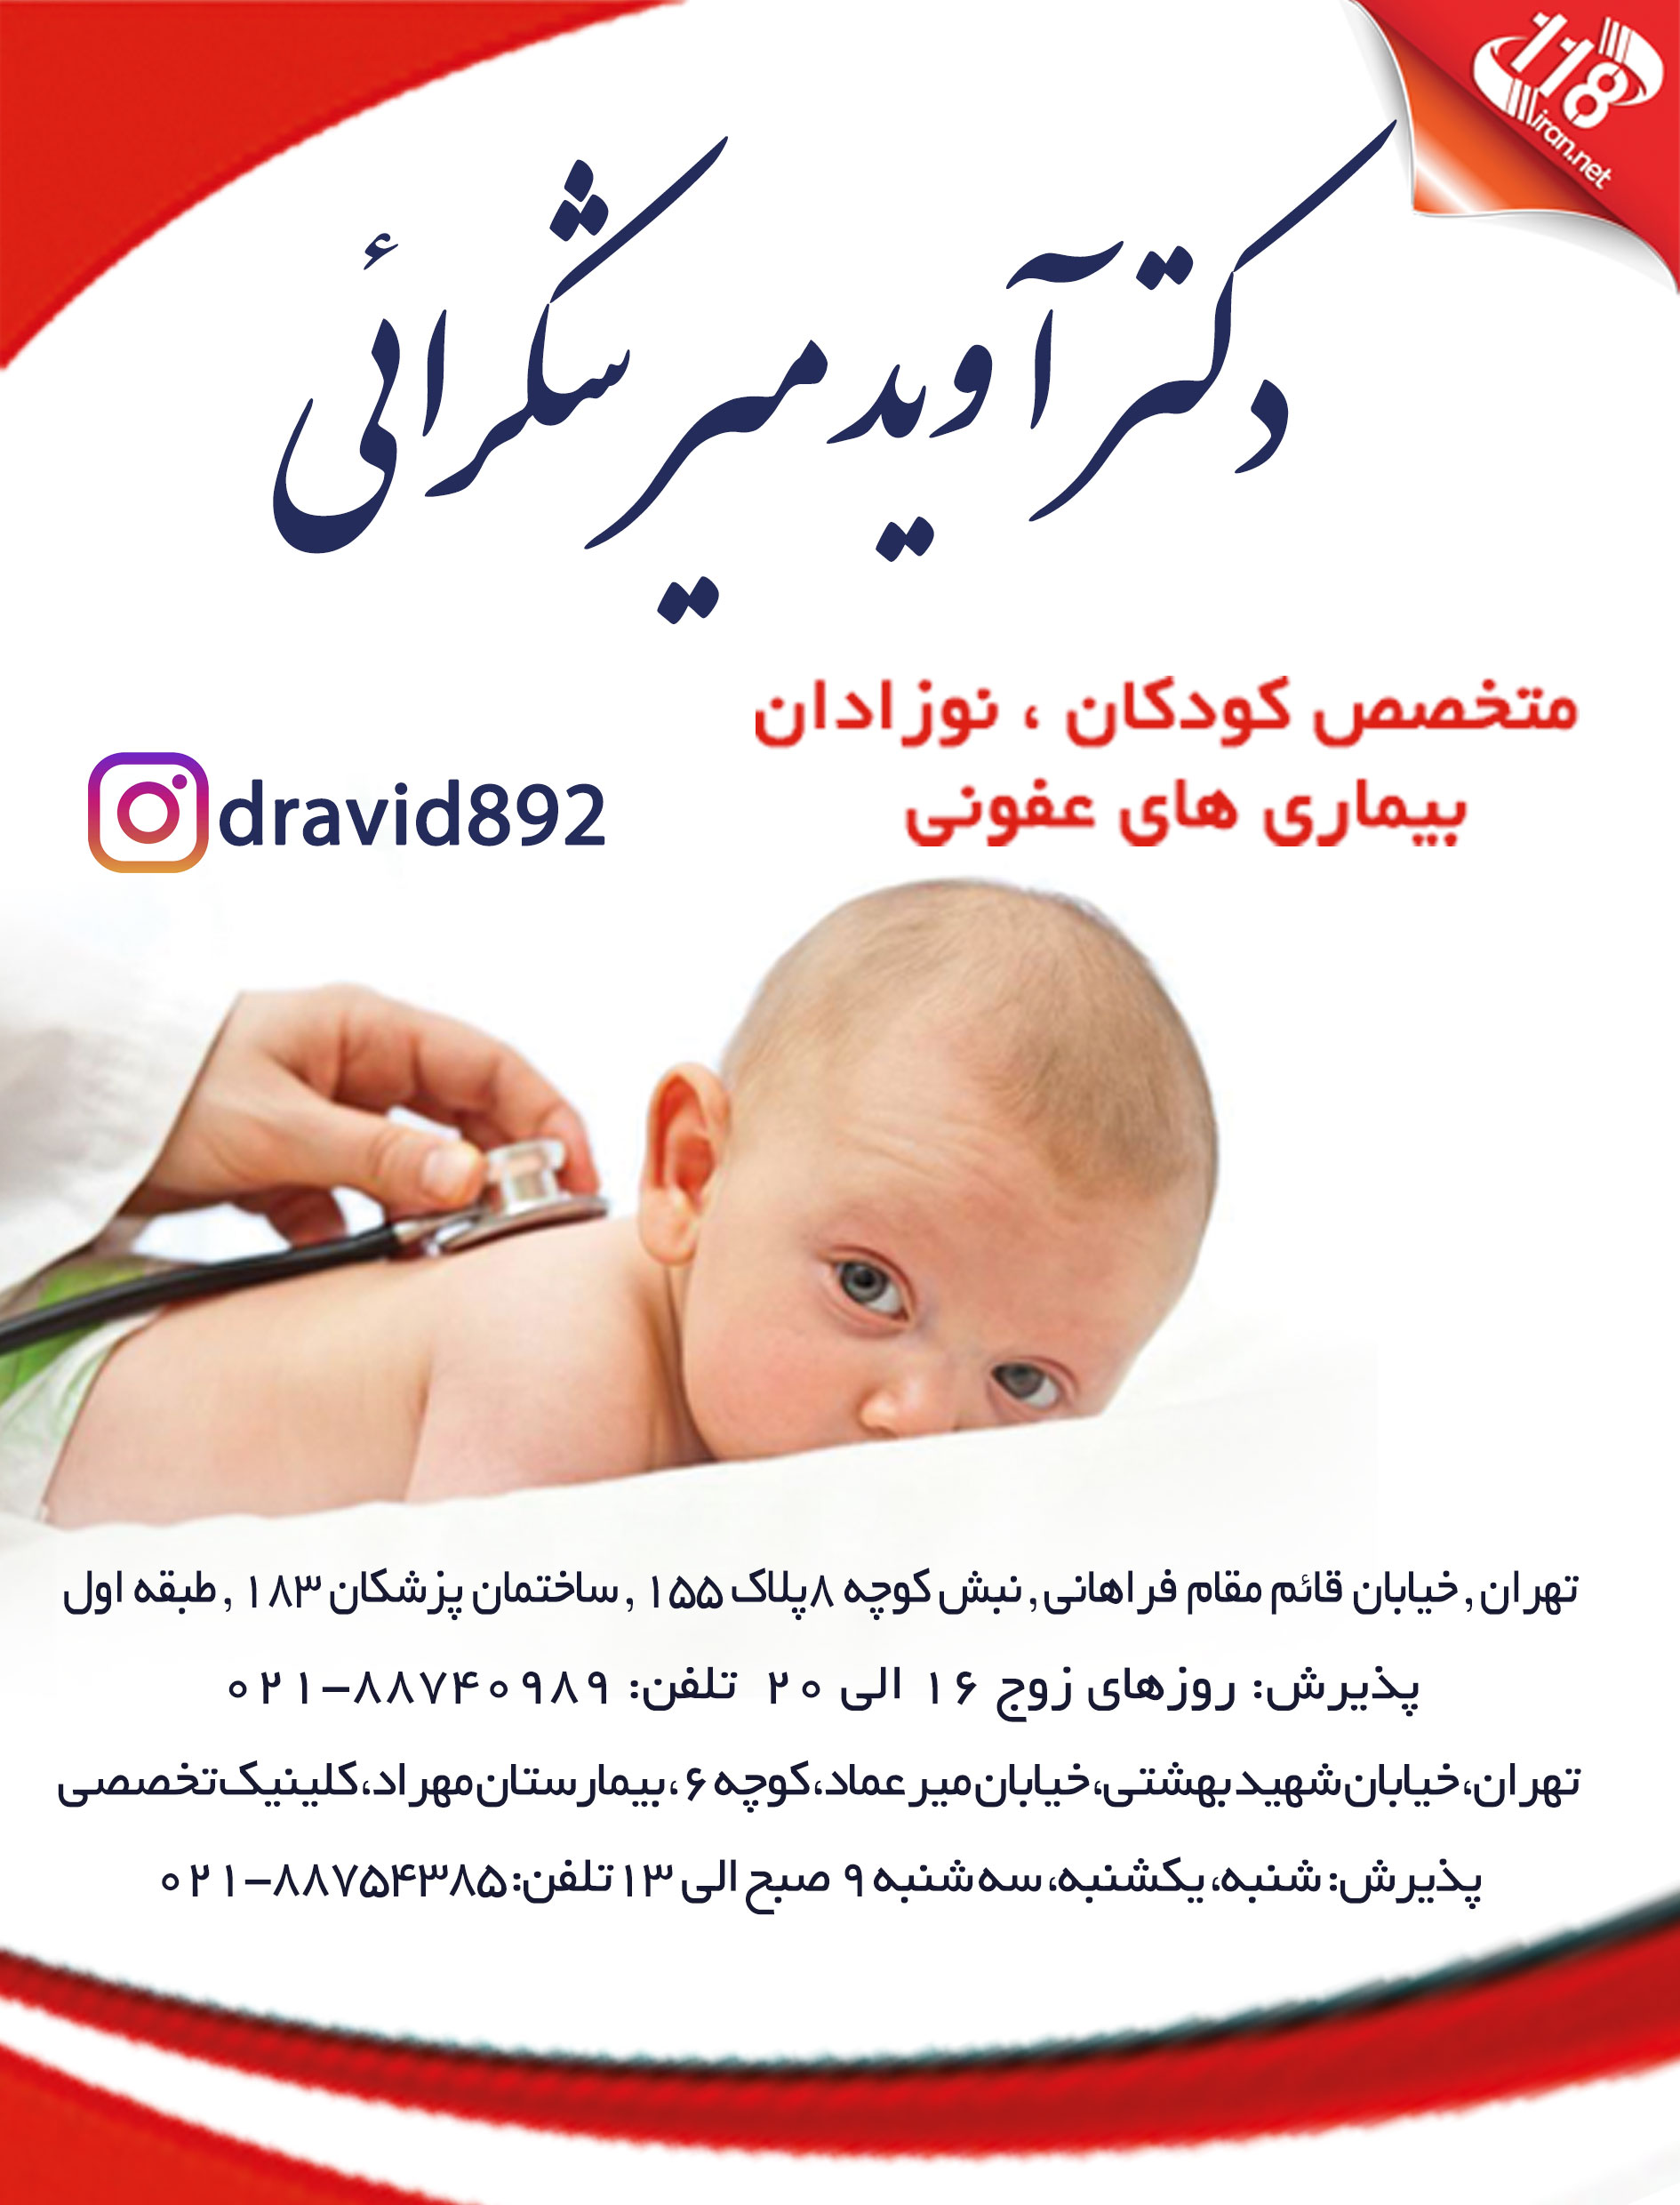  دکتر آوید میرشکرائی در تهران 